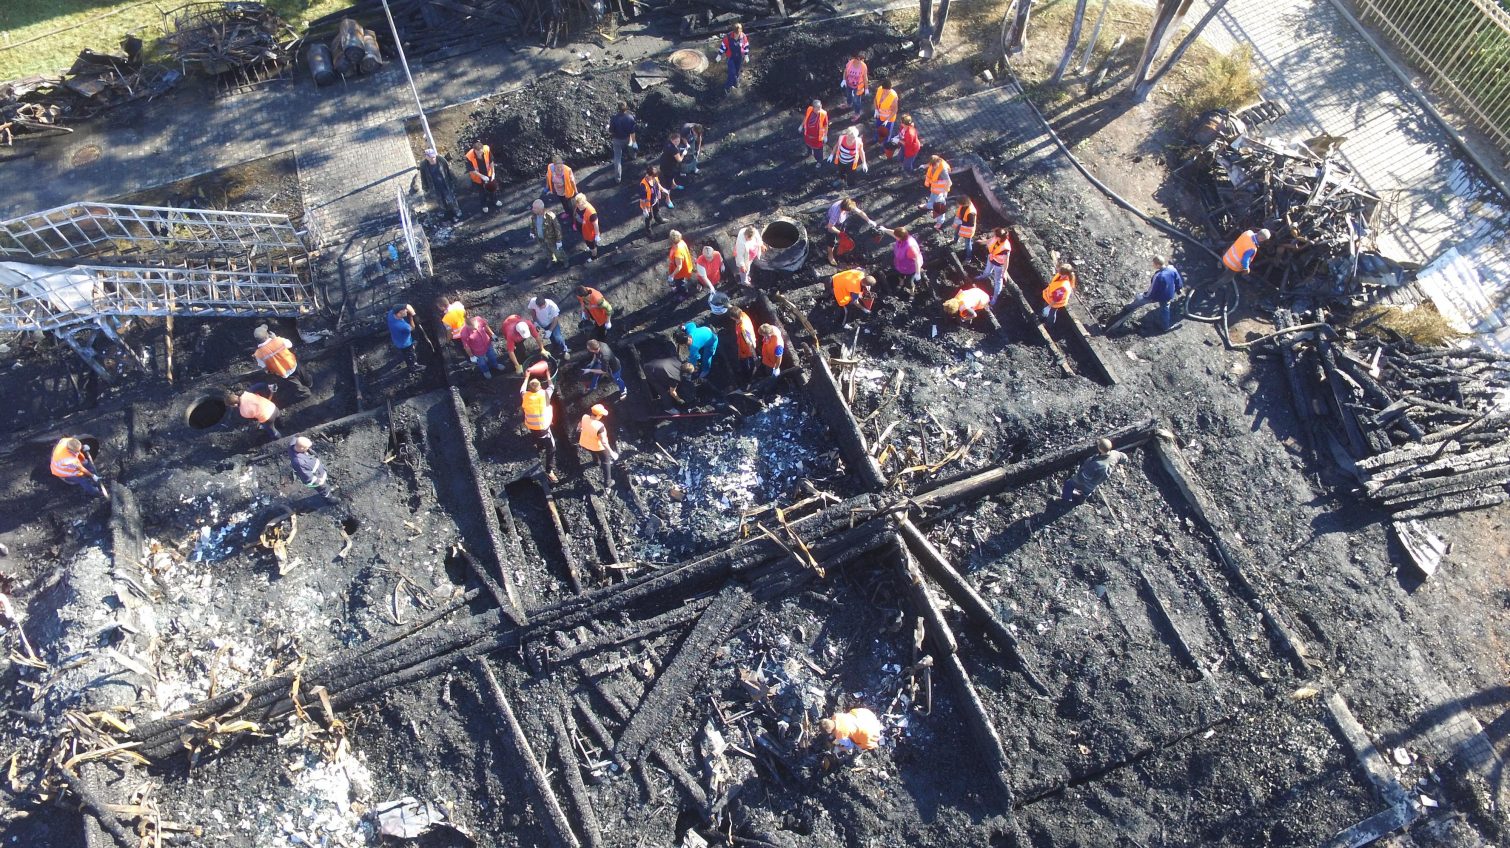 Пожар в лагере “Виктория”: городские власти сэкономили на огнезащите здания «фото»